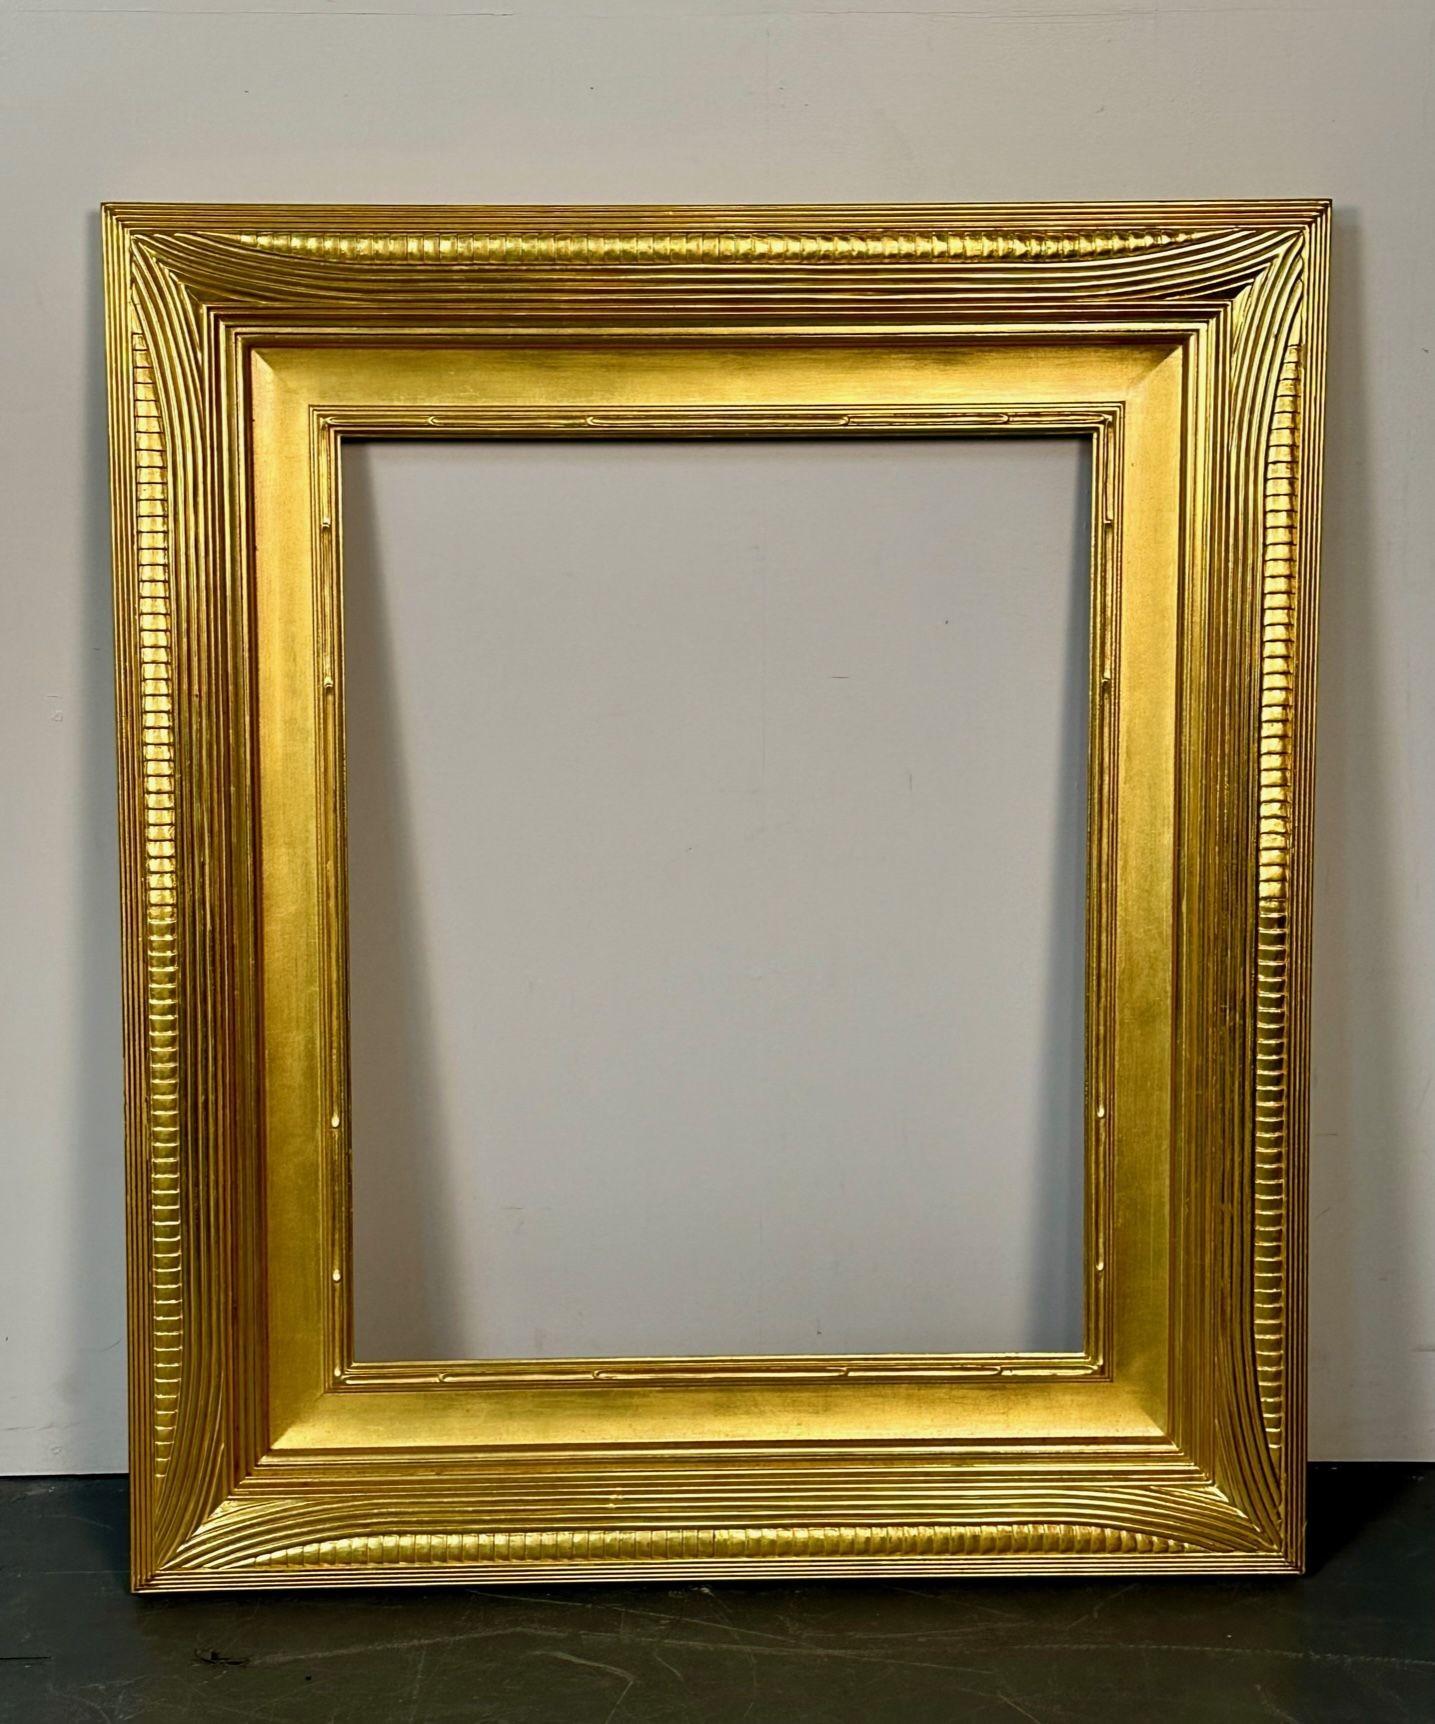 Miroir / cadre de peinture en bois doré sculpté, style Hollywood Regency, sur mesure
 
L'un des cadres pour tableaux ou miroirs en bois finement doré d'une collection, dans un nouveau design époustouflant doré à l'eau. 
 
Extérieur :  43 H x 37,5 L